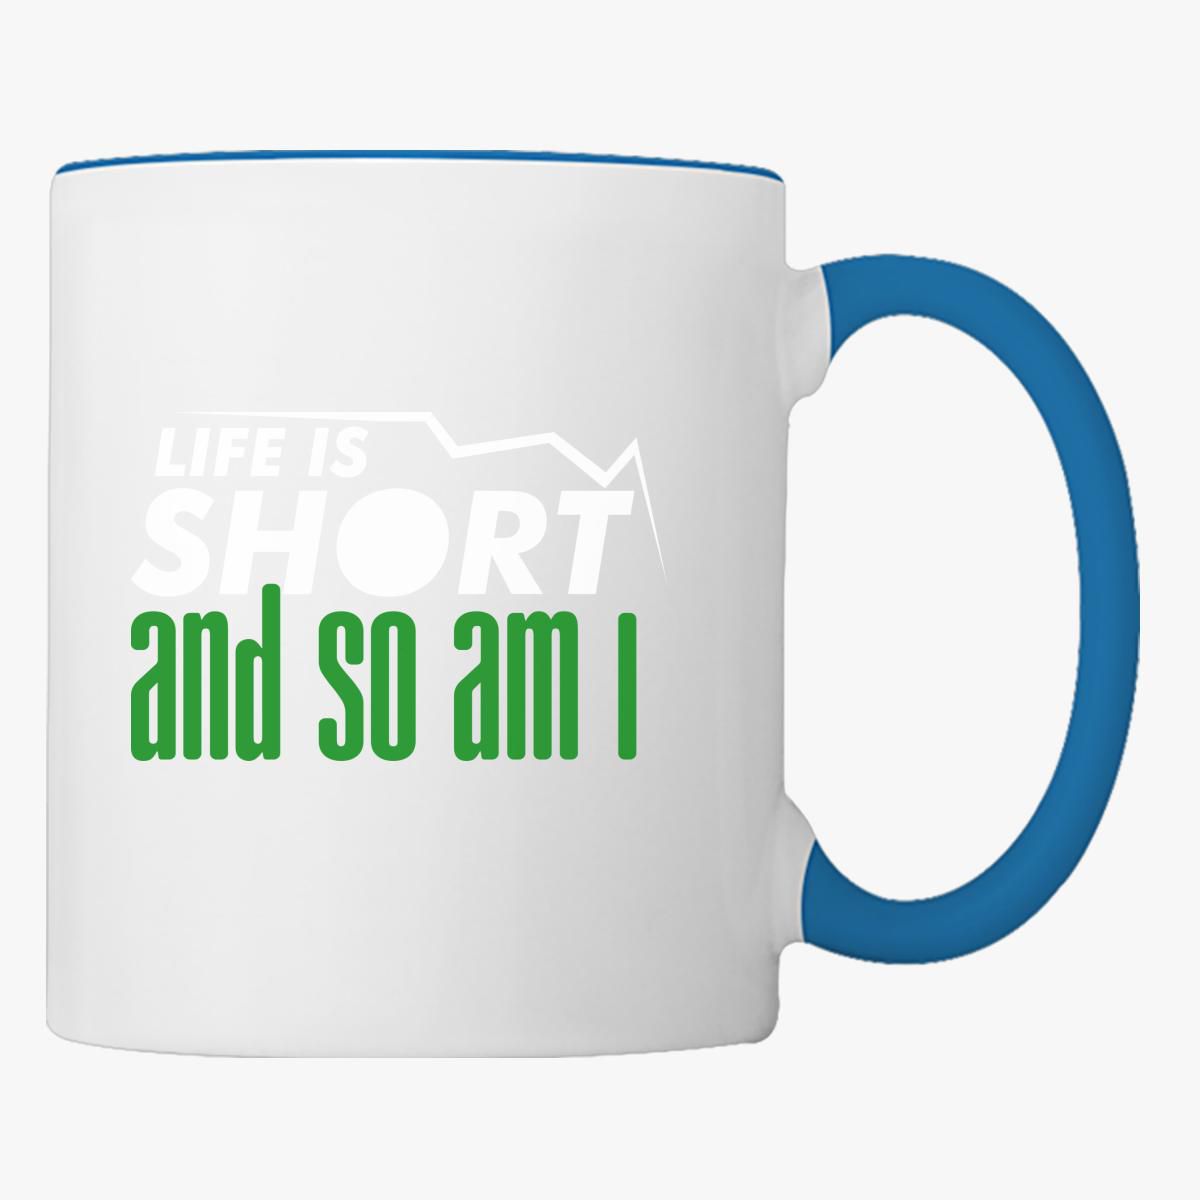 coffee mug life